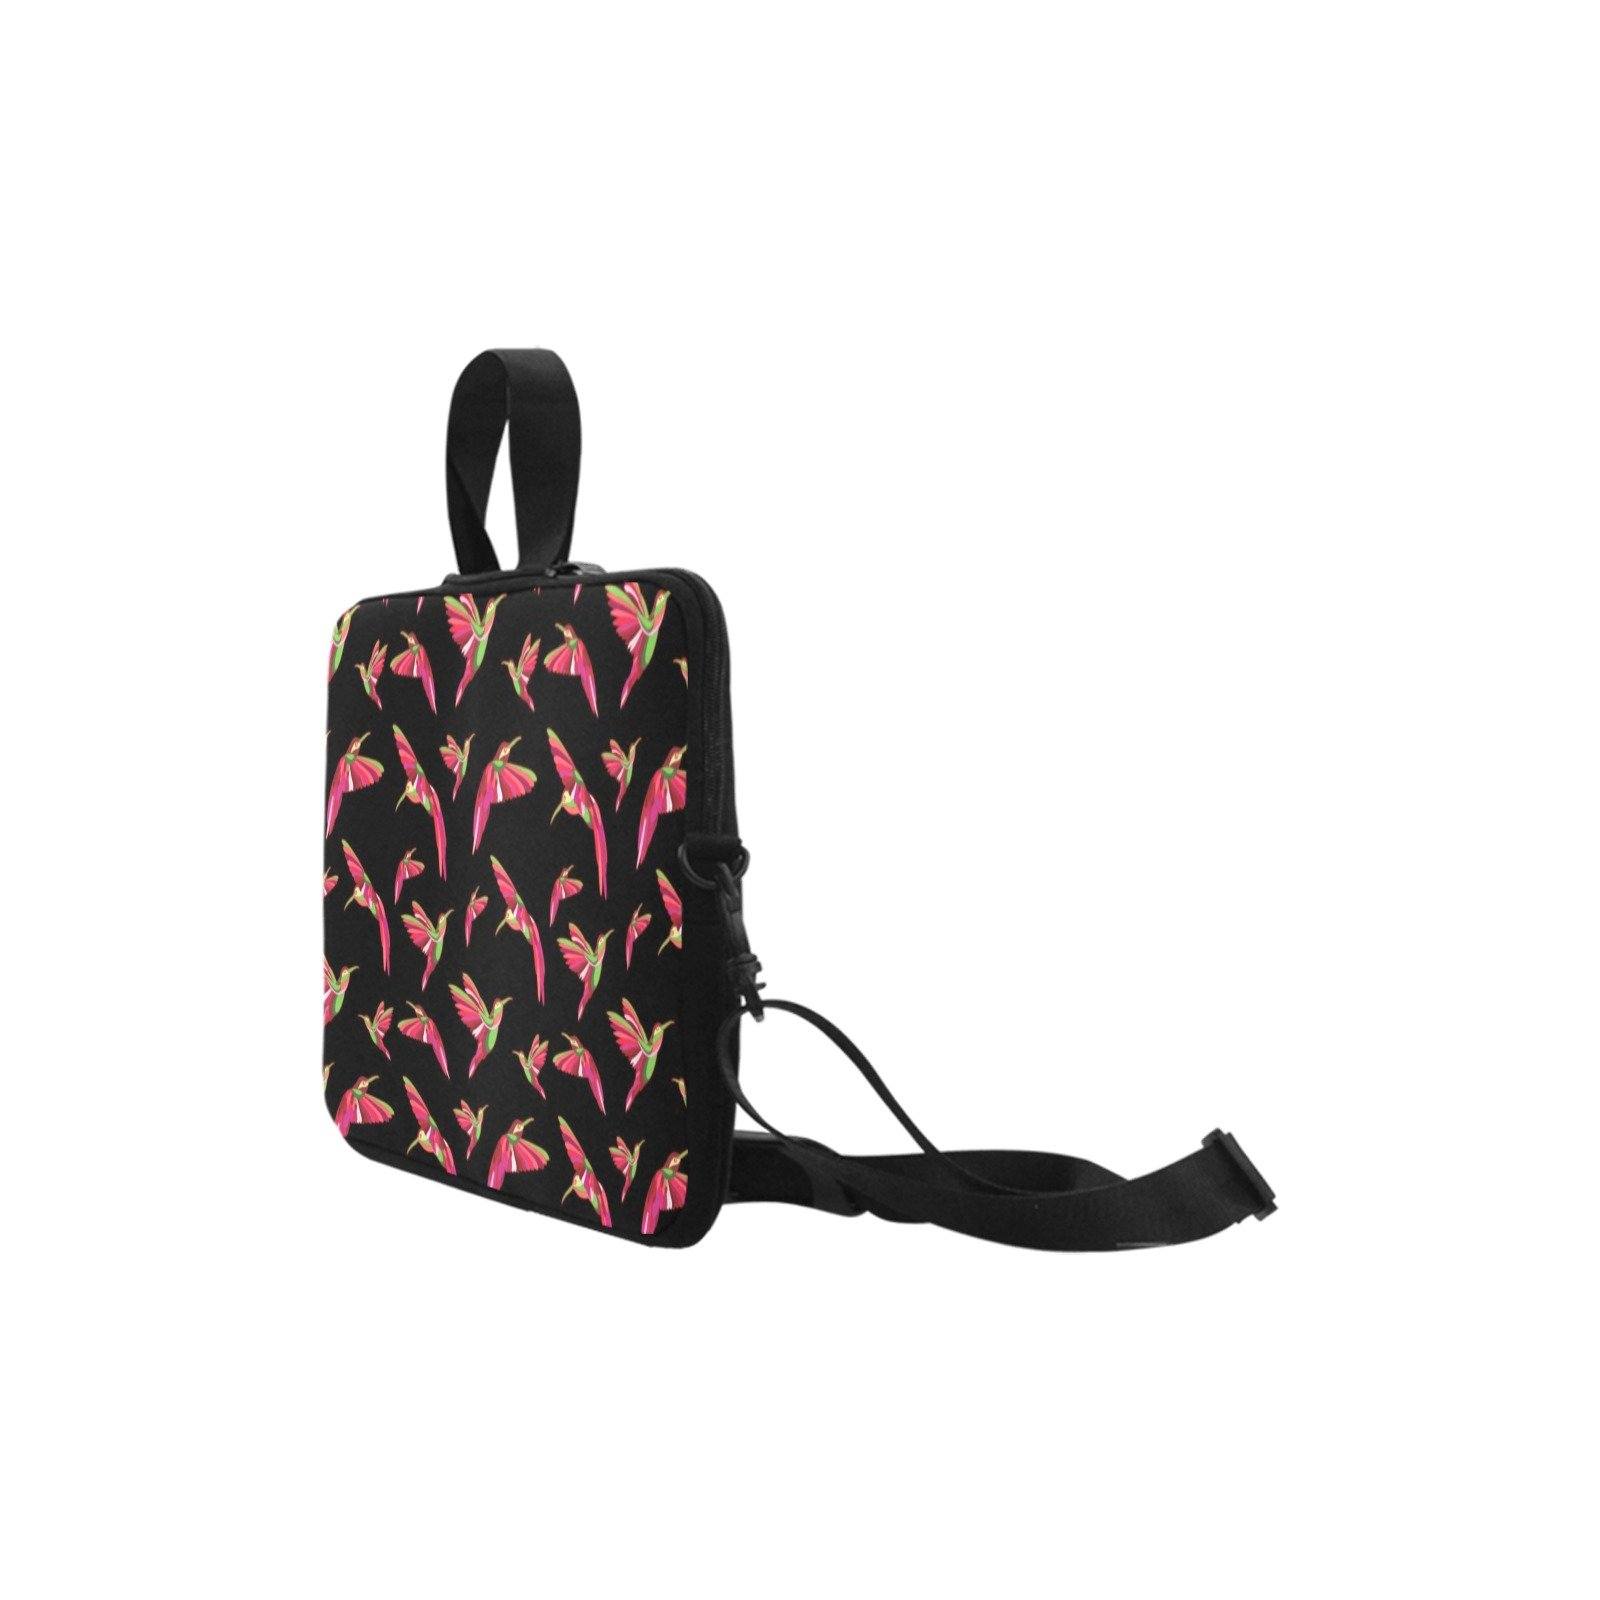 Red Swift Colourful Black Laptop Handbags 14" bag e-joyer 